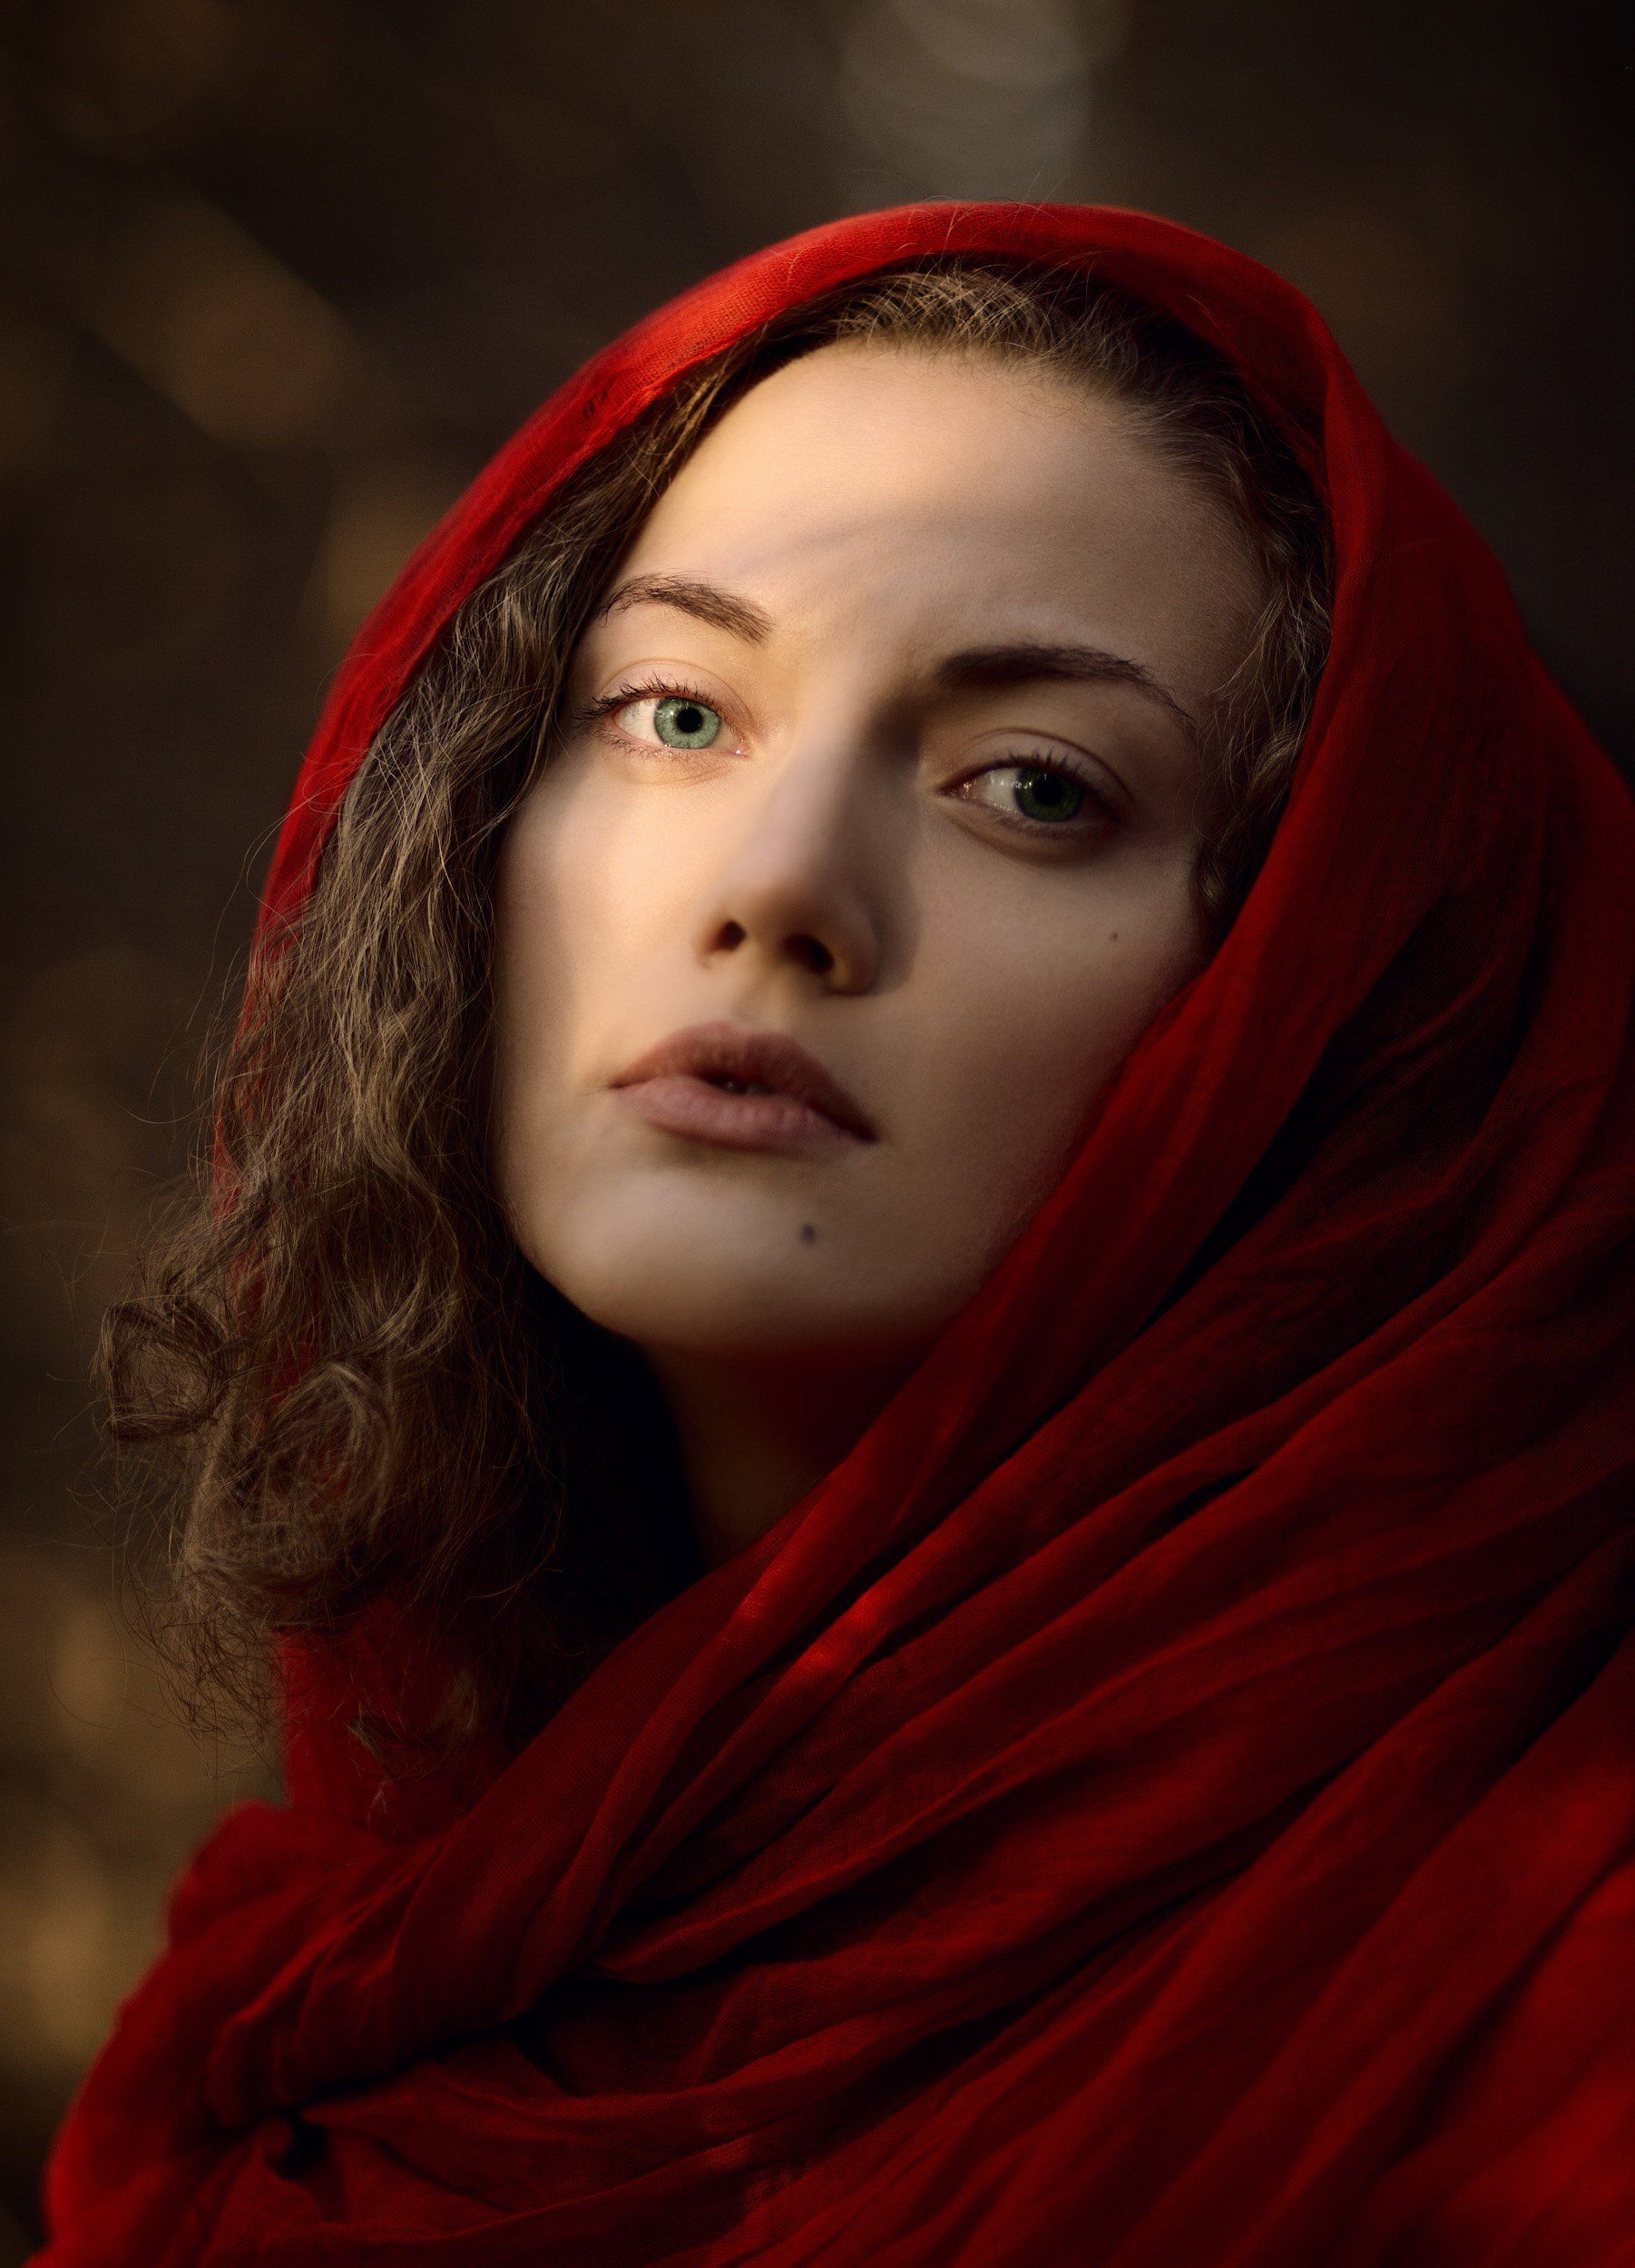 Аня в красном платке - 20 фото